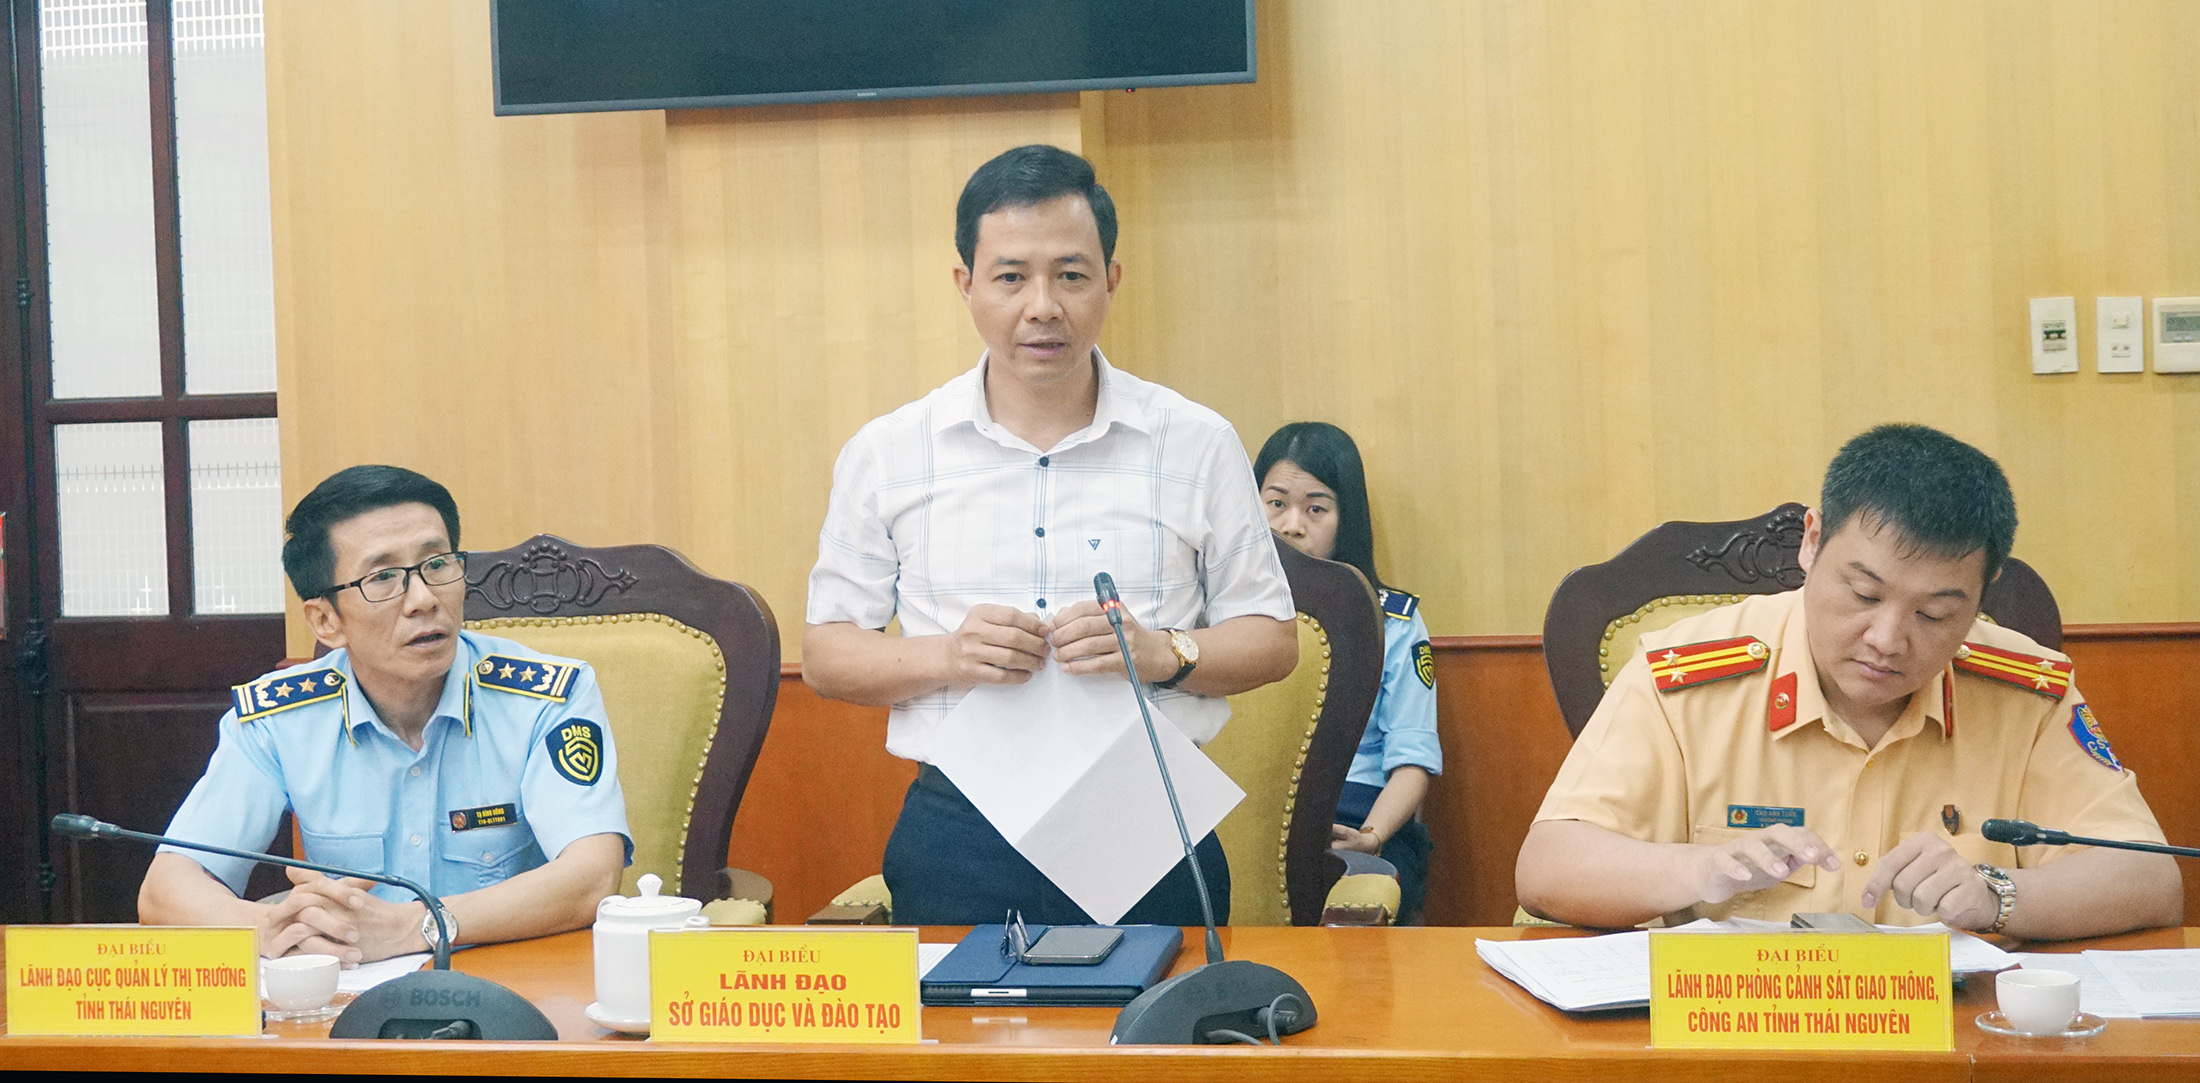 Đồng chí Nguyễn Văn Hưng, Phó Giám đốc Sở Giáo dục và Đào tạo thông tin tại Hội nghị